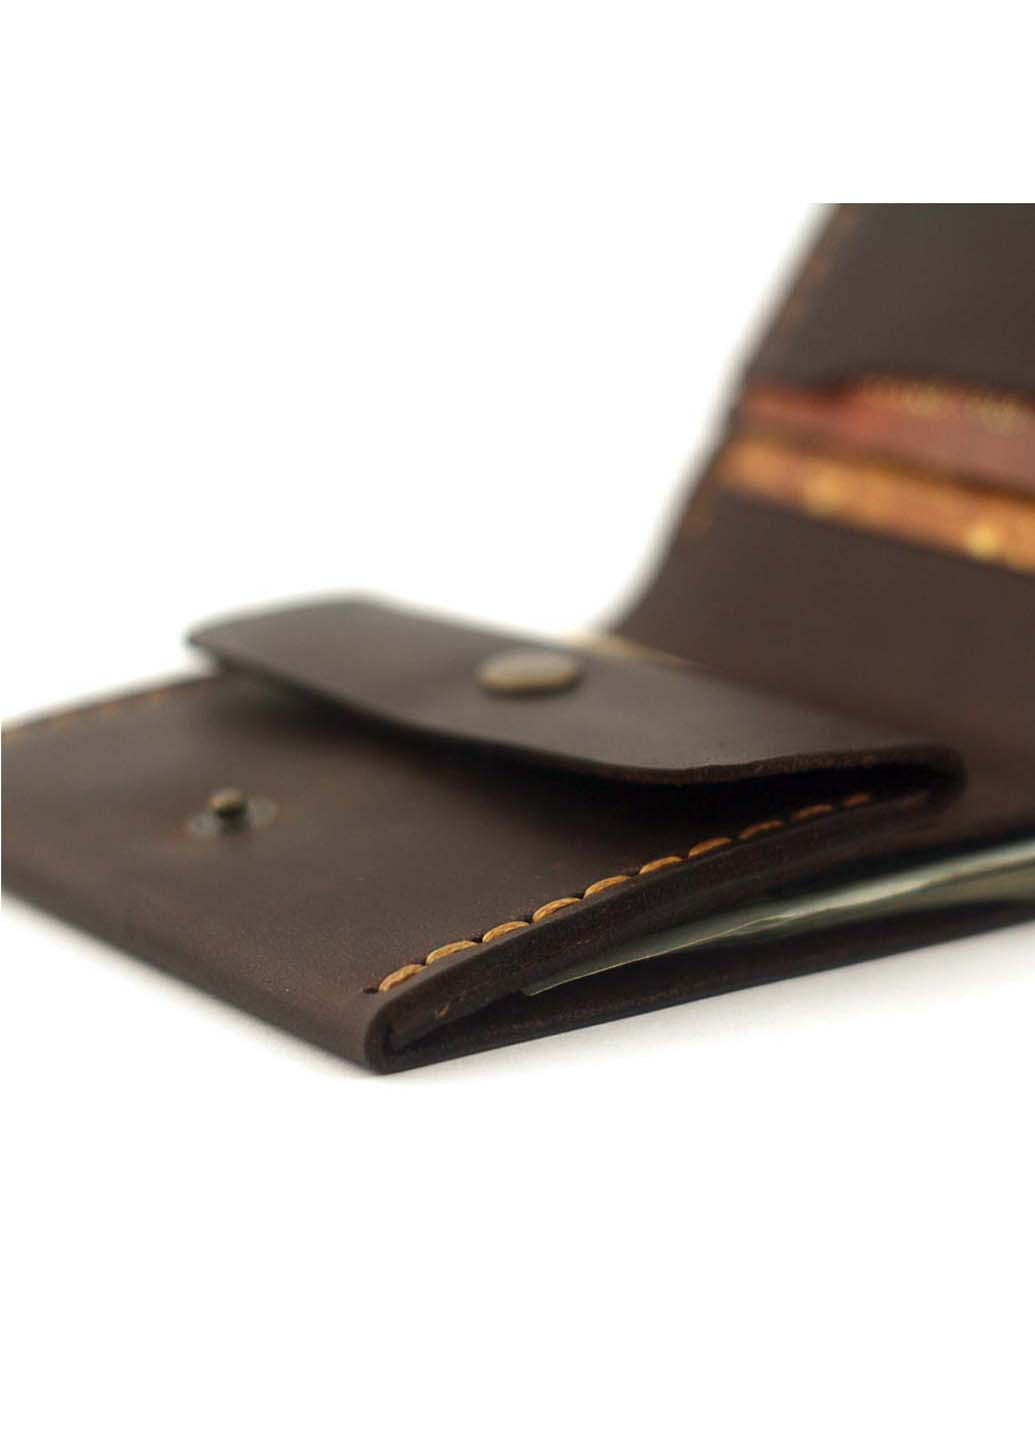 Мужской кожаный кошелек на кнопке классический Wallet Square с отделением для монет Anchor Stuff (275992274)